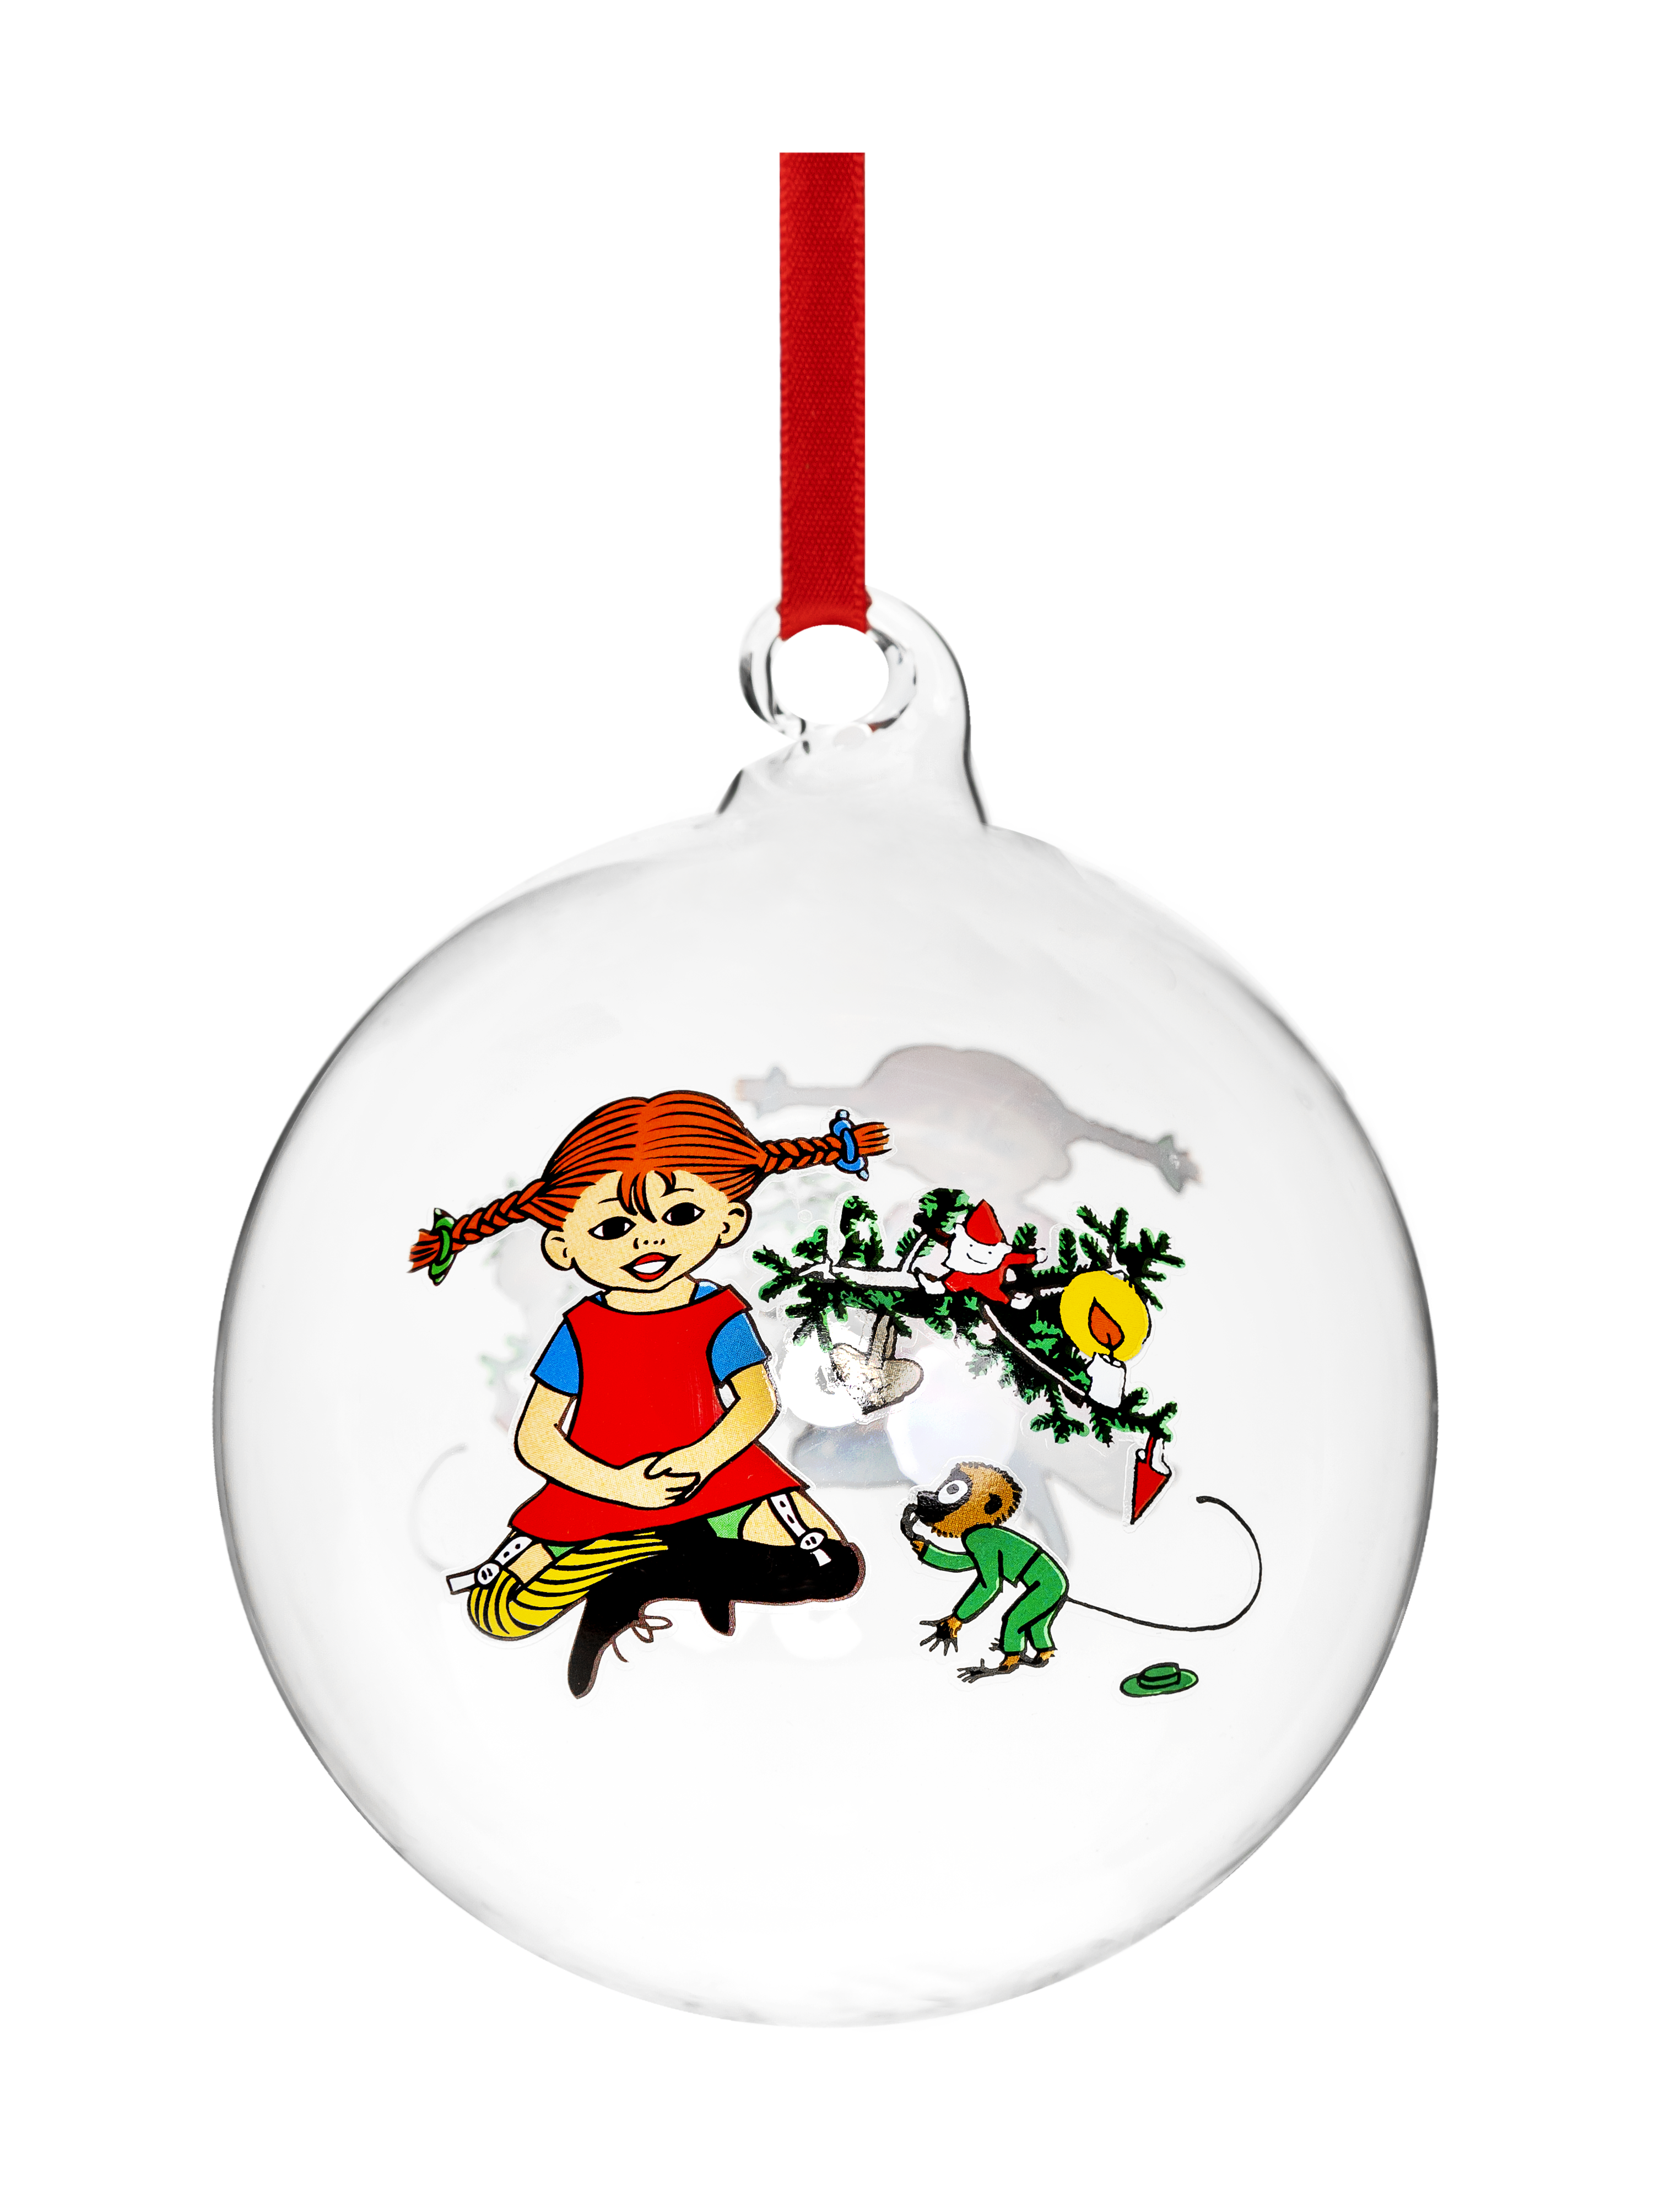 Slægtsforskning Udgående Nævne Pippi langstrømpe julekugle med navn - 9 cm - Mumitrolde julekugler med  navn - Bæklund Design ApS